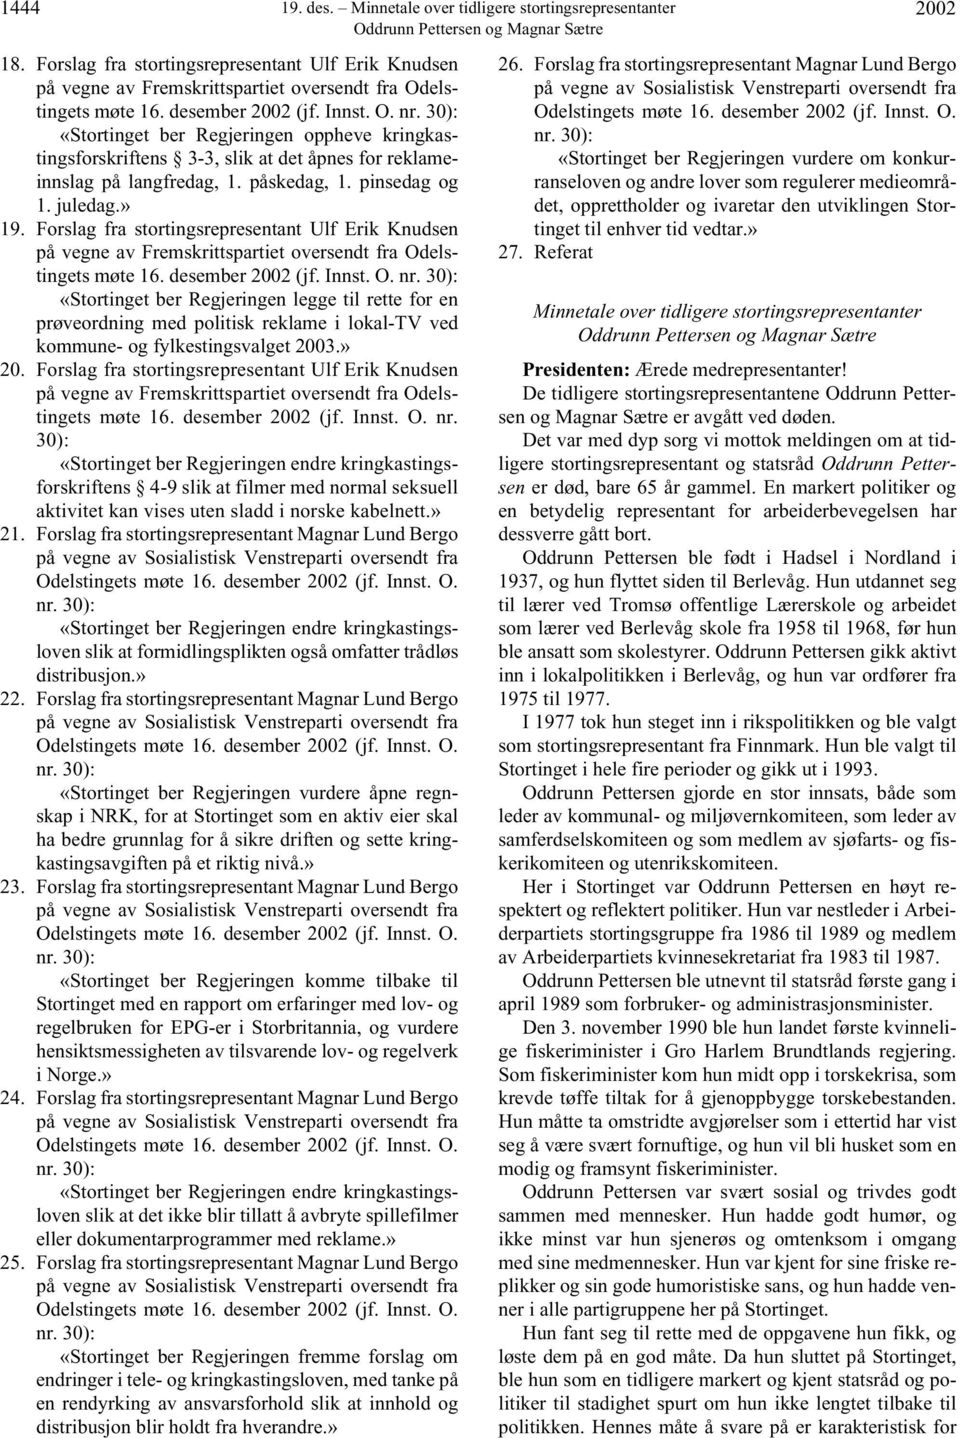 Forslag fra stortingsrepresentant Ulf Erik Knudsen på vegne av Fremskrittspartiet oversendt fra Odelstingets møte 16. desember 2002 (jf. Innst. O. nr.